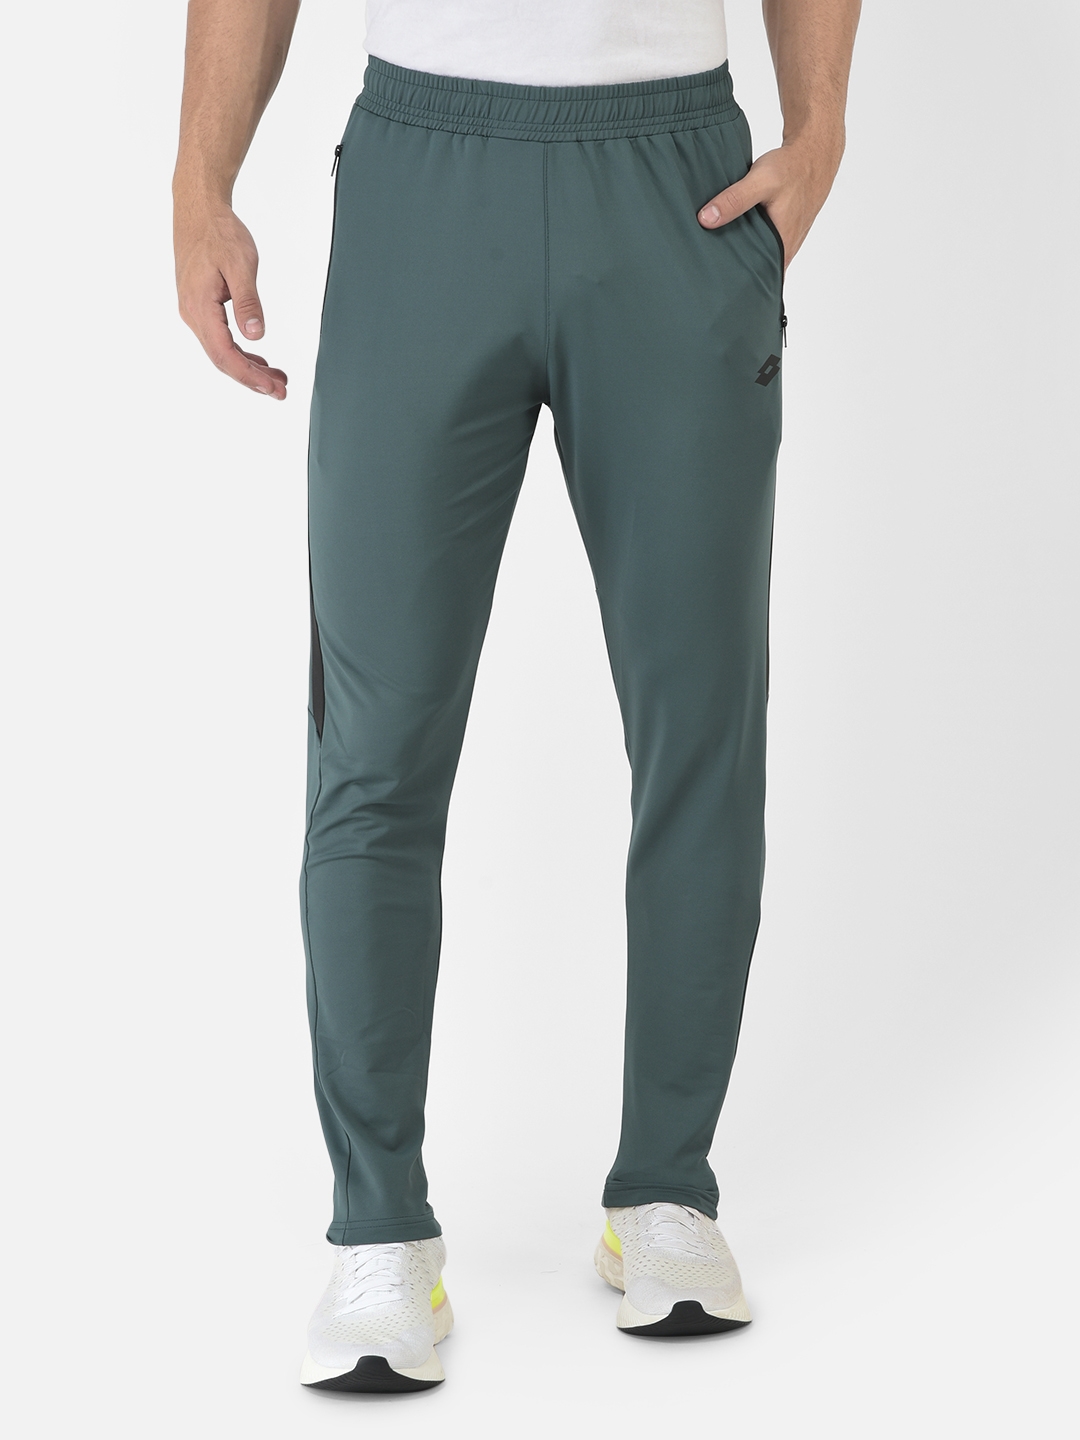 Nike Dri Fit Tour Performance Golf Pants 34 x 32 Electric Blue | Golf pants,  Clothes design, Pants